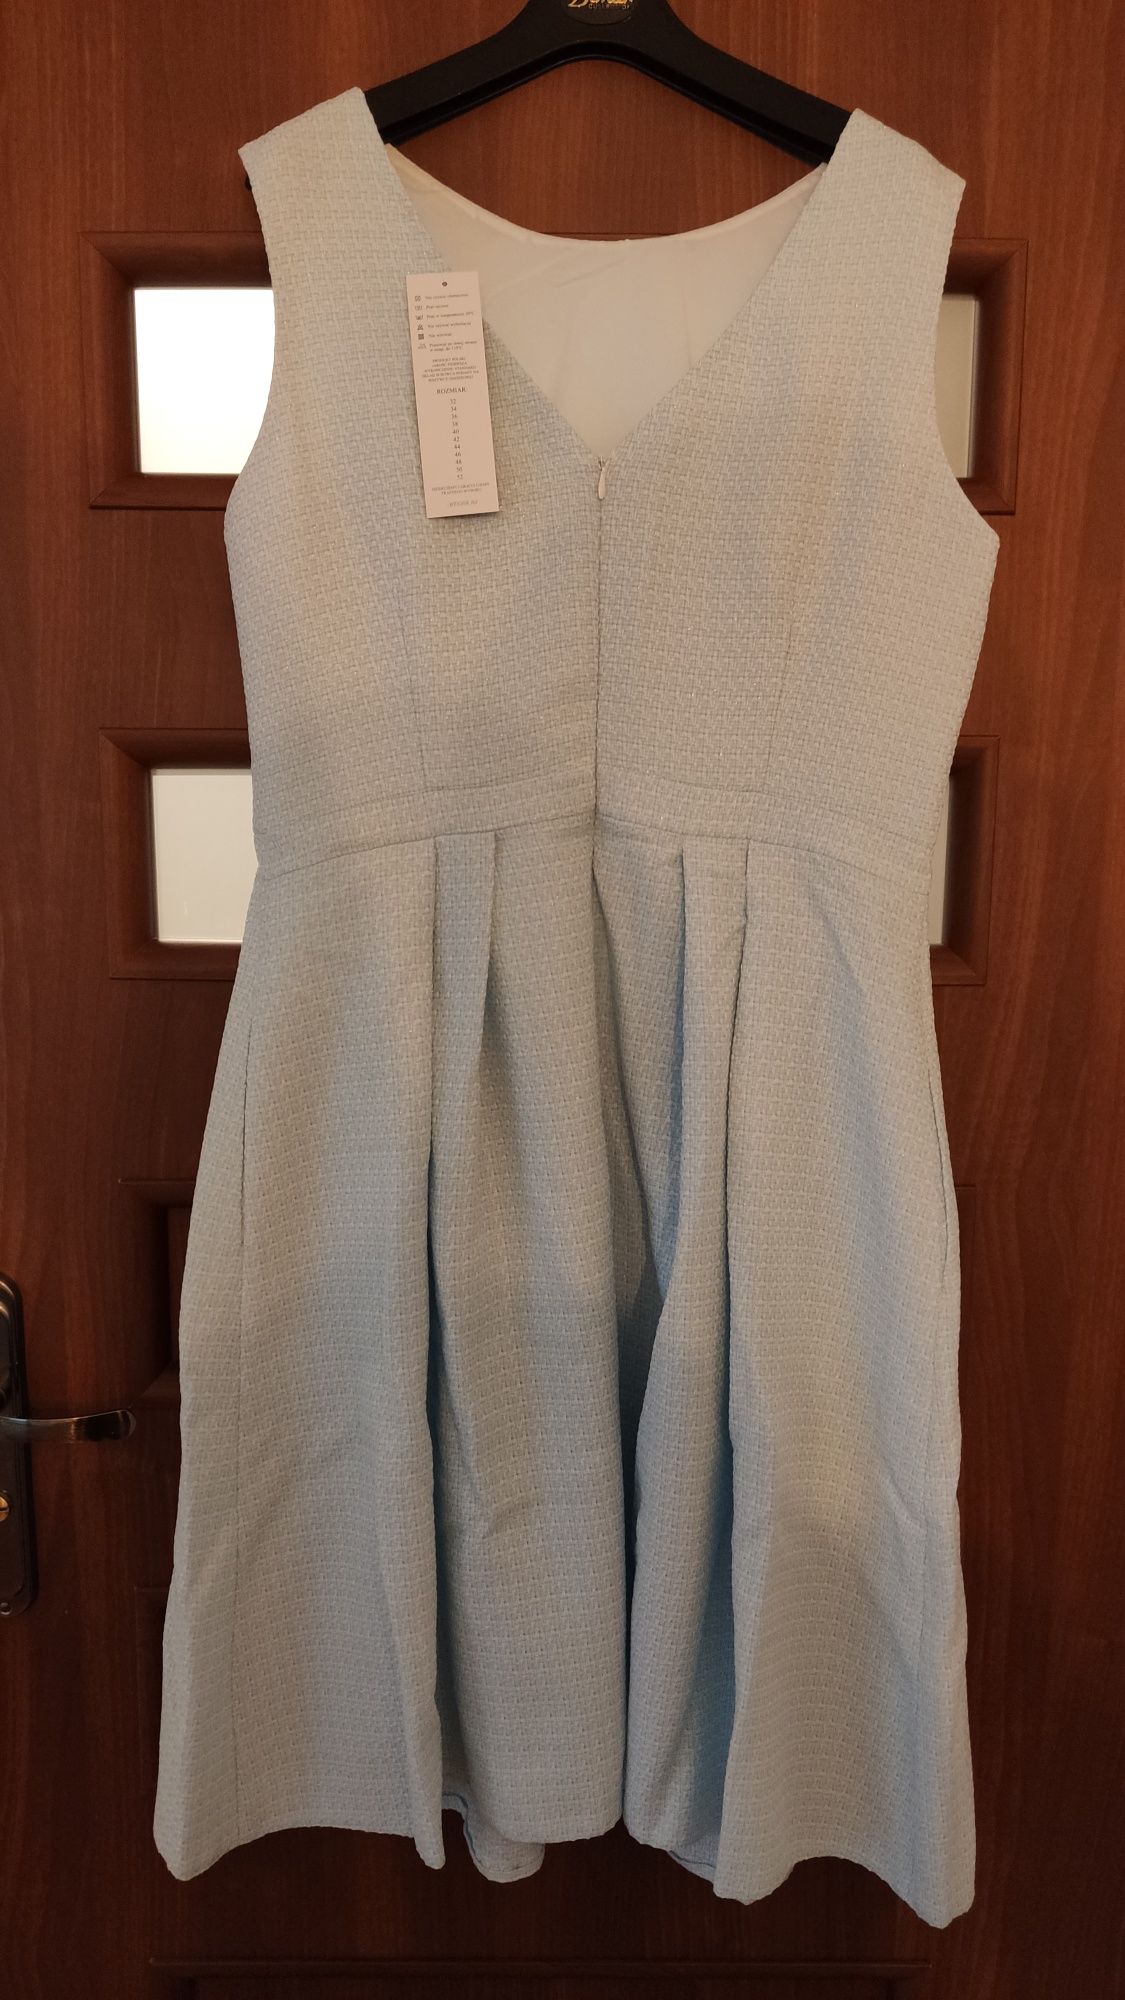 Błękitna sukienka na wesele chrzciny komunię